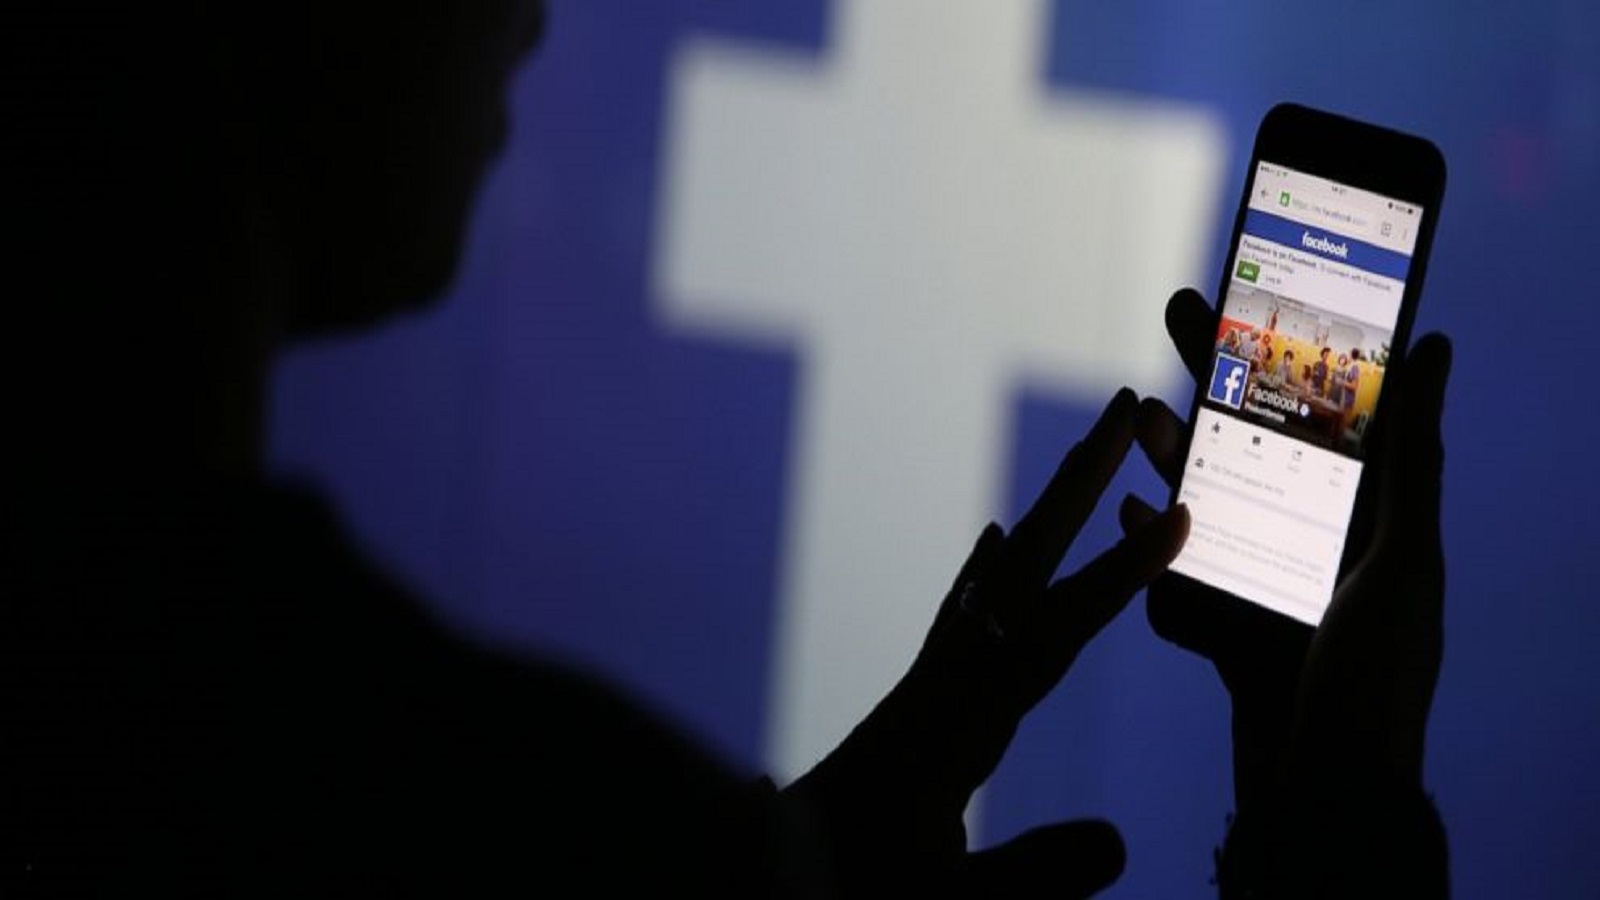 "فايسبوك" يعدّل نظام إعلاناته قبل الانتخابات الكونغرس